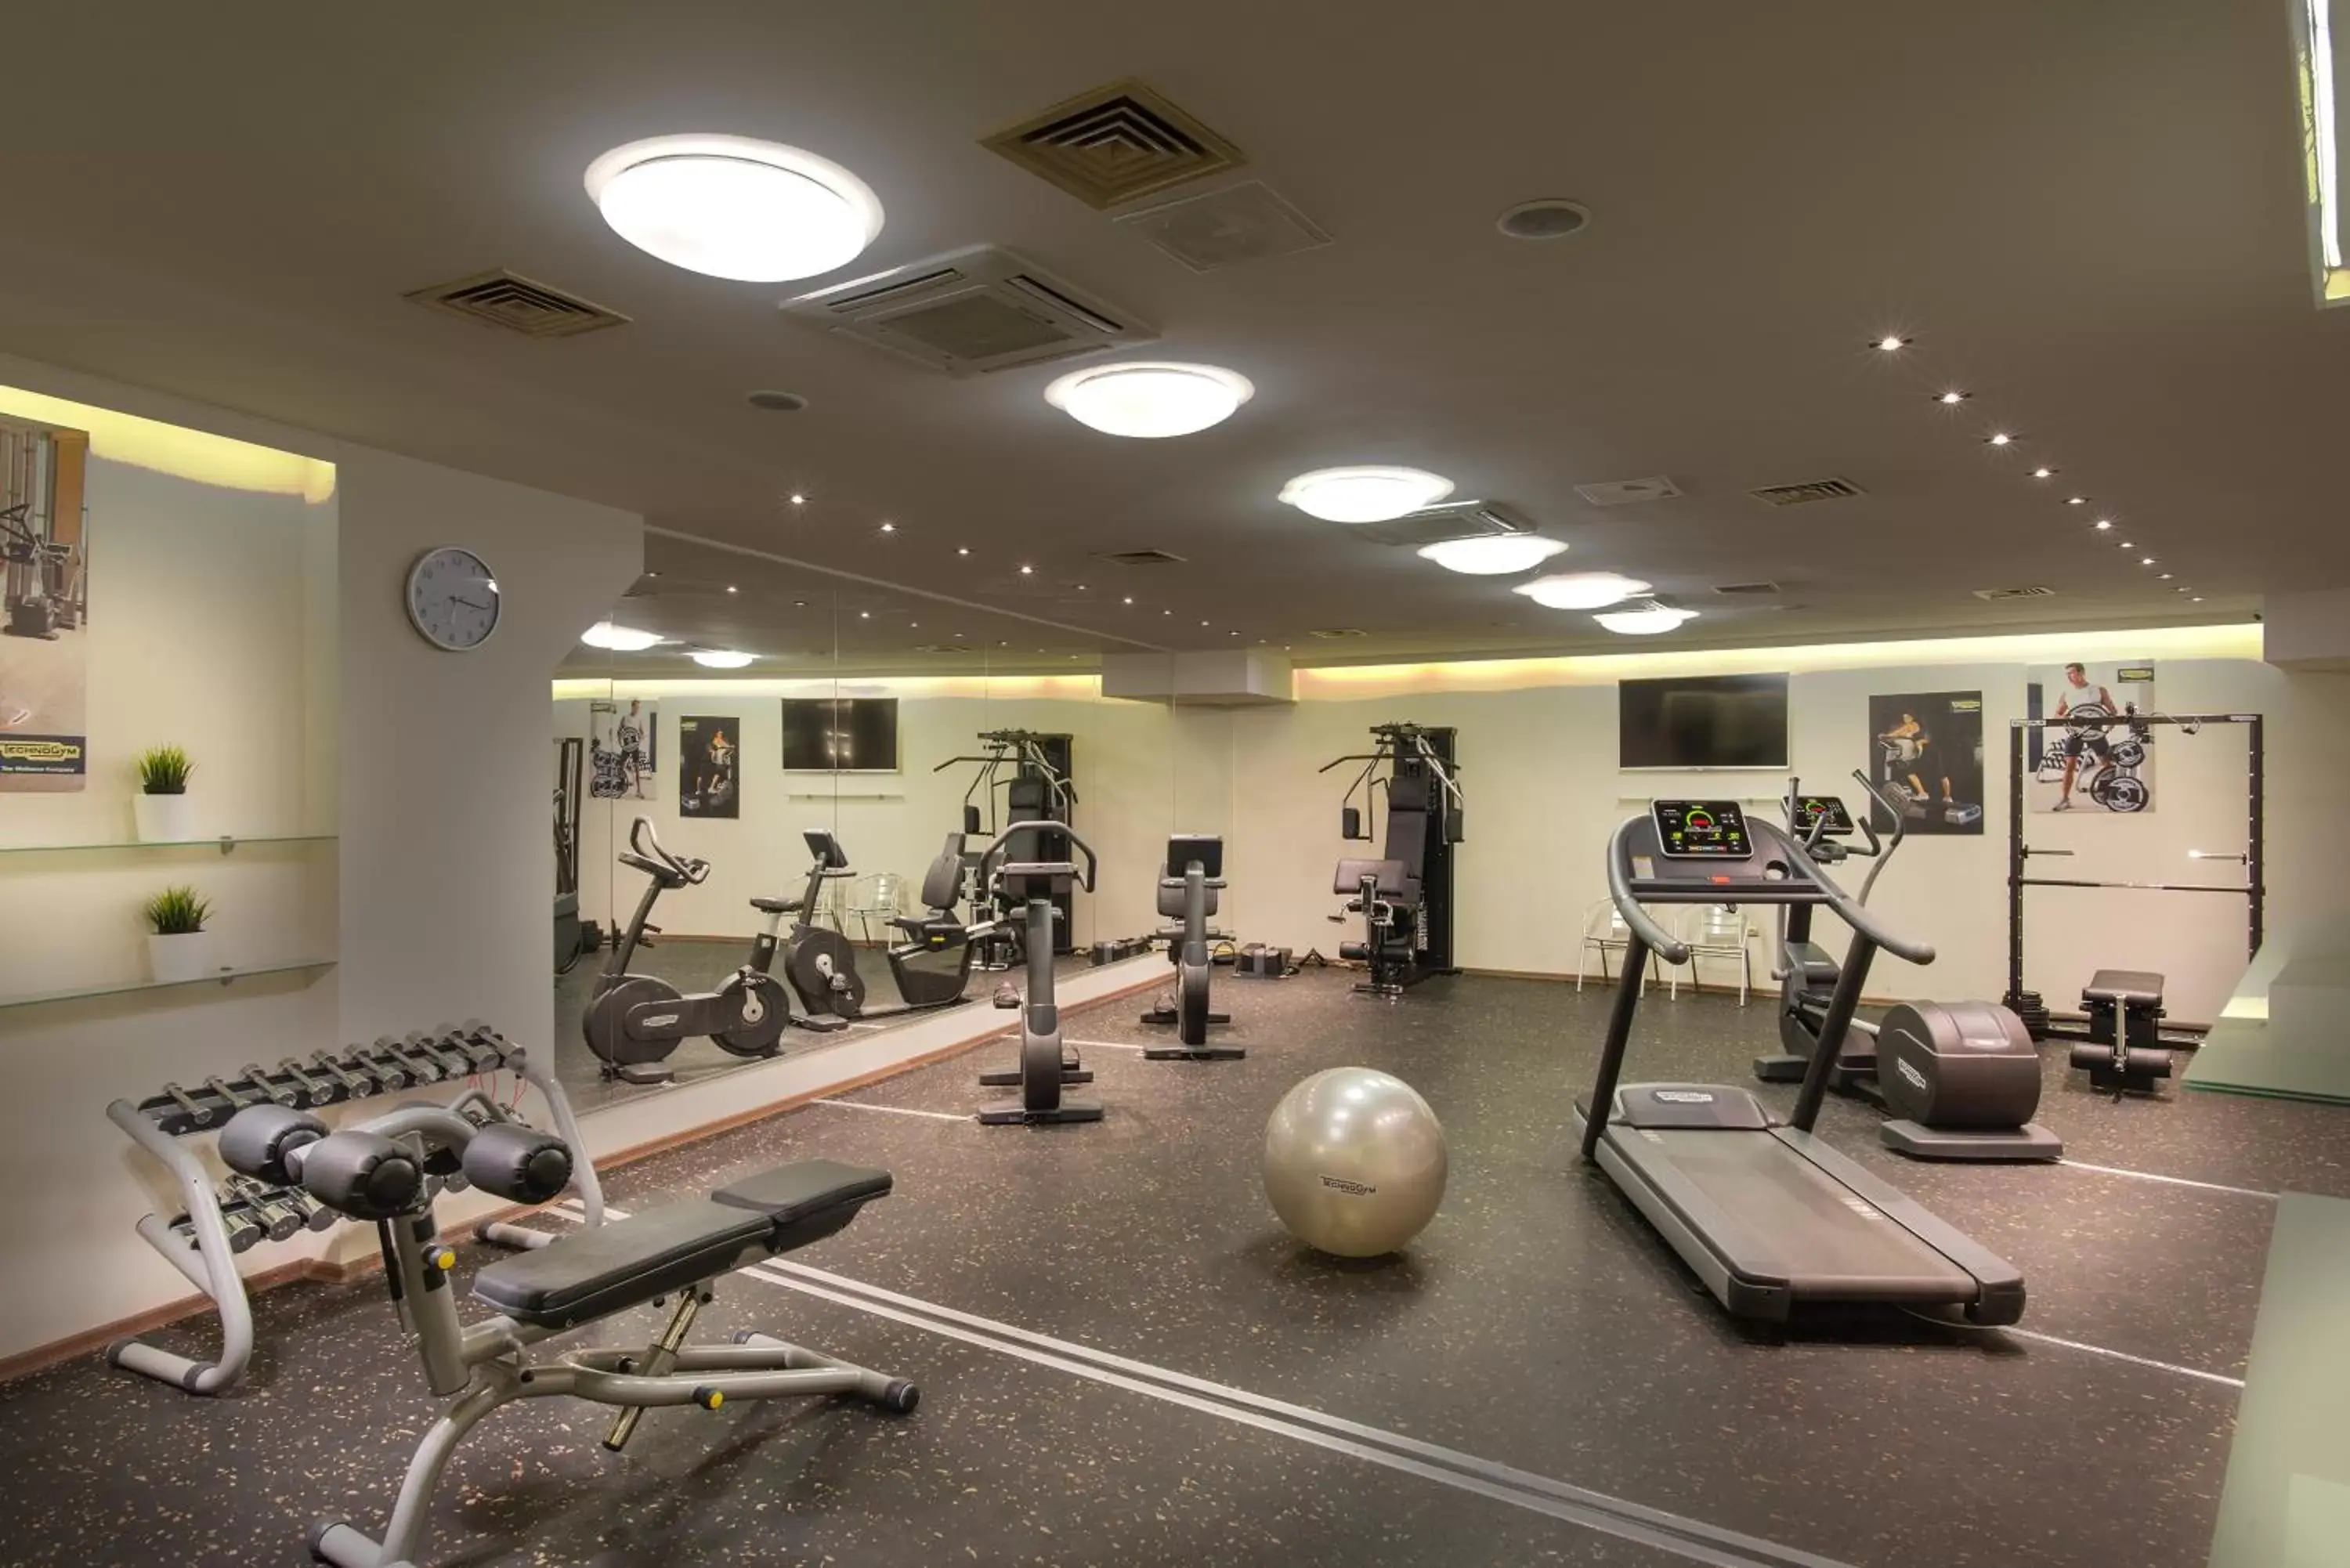 Fitness centre/facilities, Fitness Center/Facilities in Rosslyn Dimyat Hotel Varna